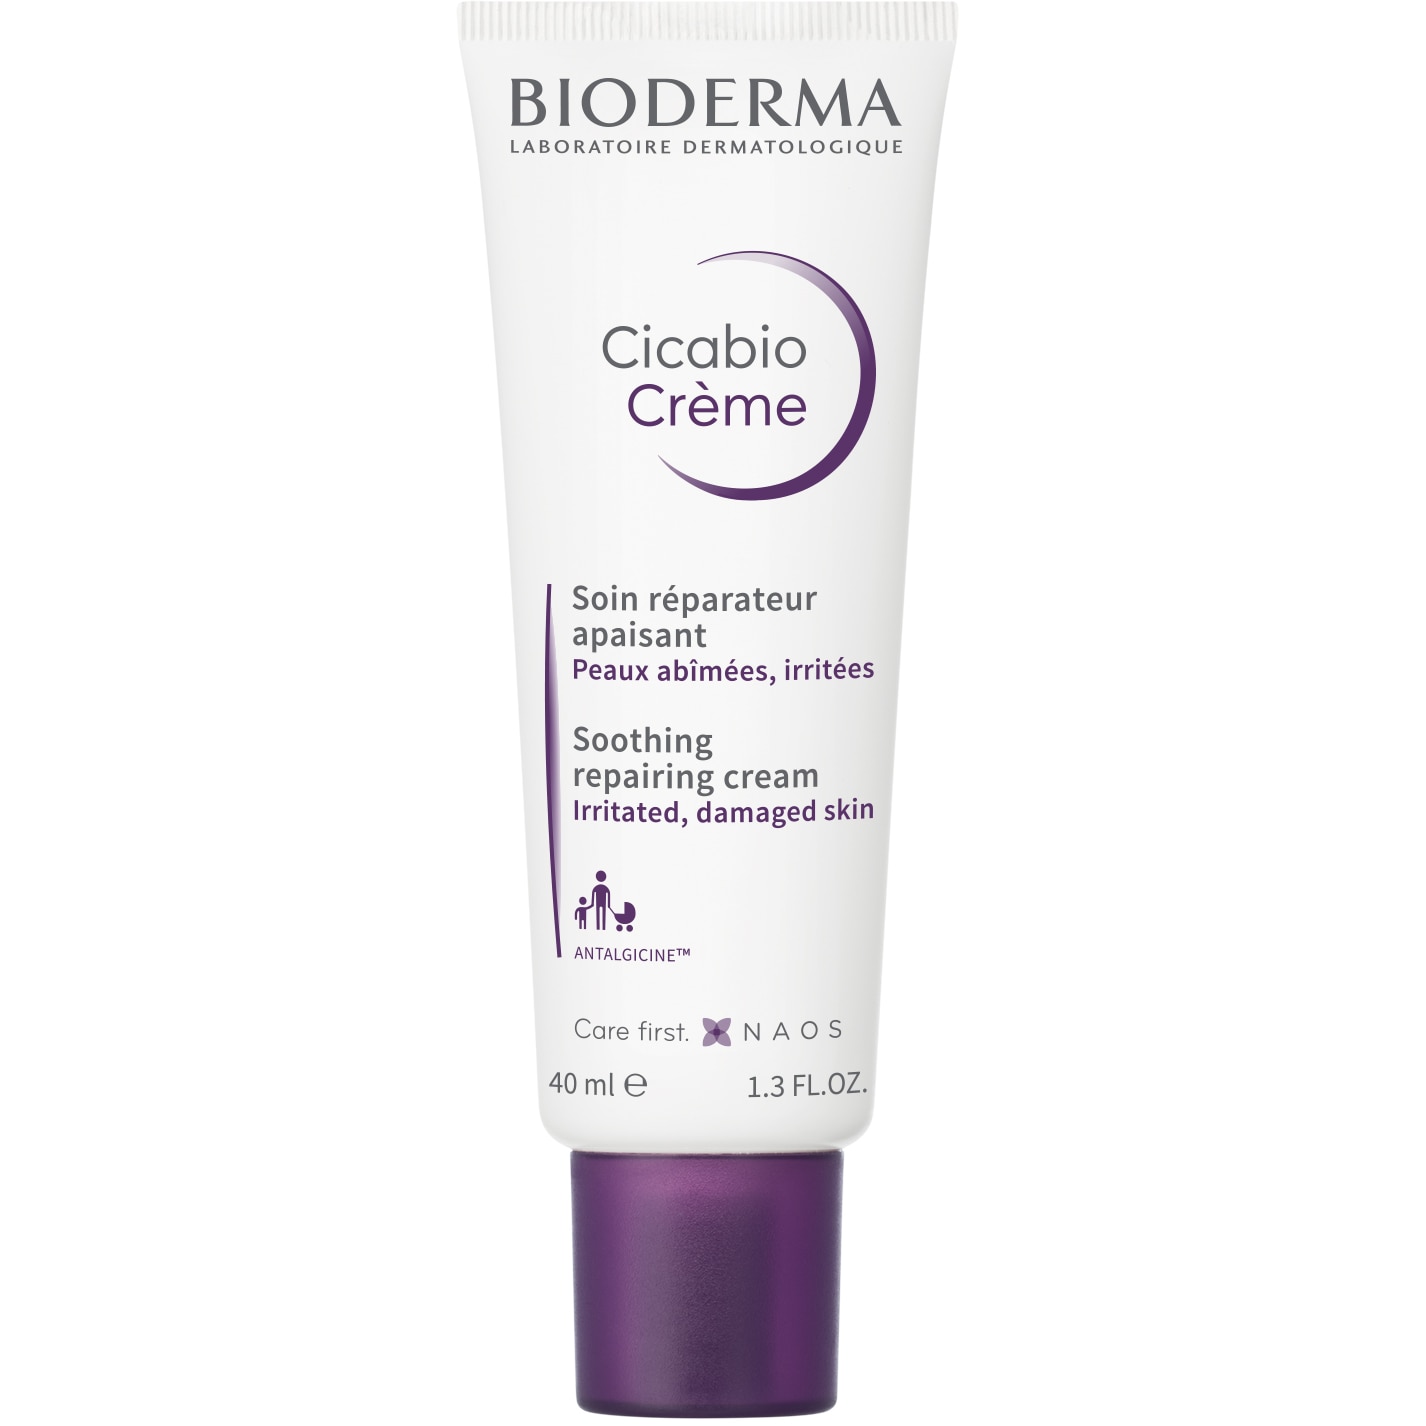 Crema reparatoare Bioderma Cicabio pentru piele iritata si cu leziuni, 40 ml - eMAG.ro